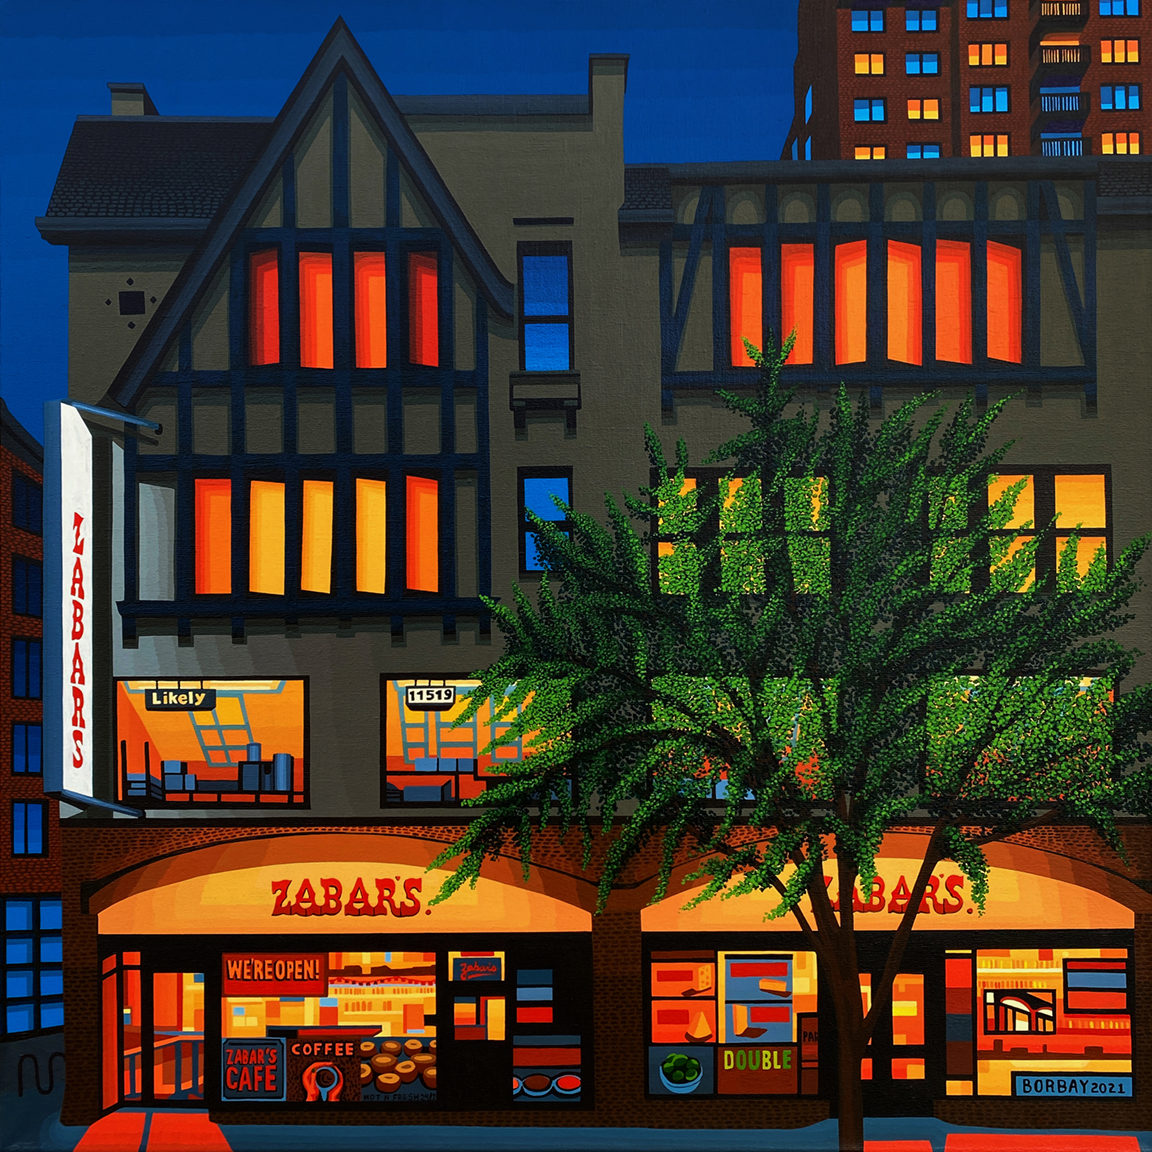 Zabars New York City Painting by Borbay